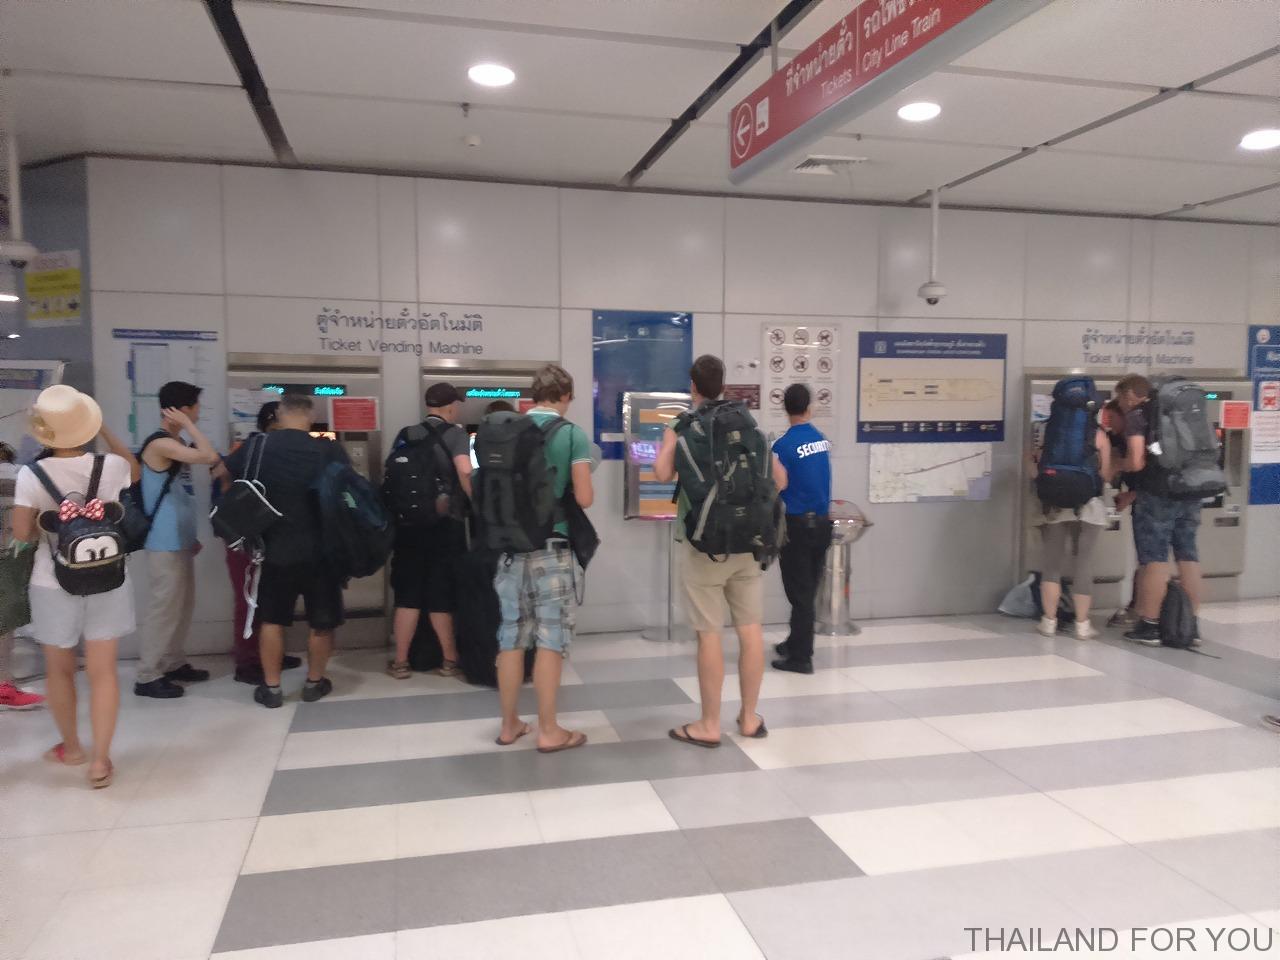 スワンナプーム国際空港からエアポートリンクで市内に出て地下鉄(MRT)に乗り換える方法